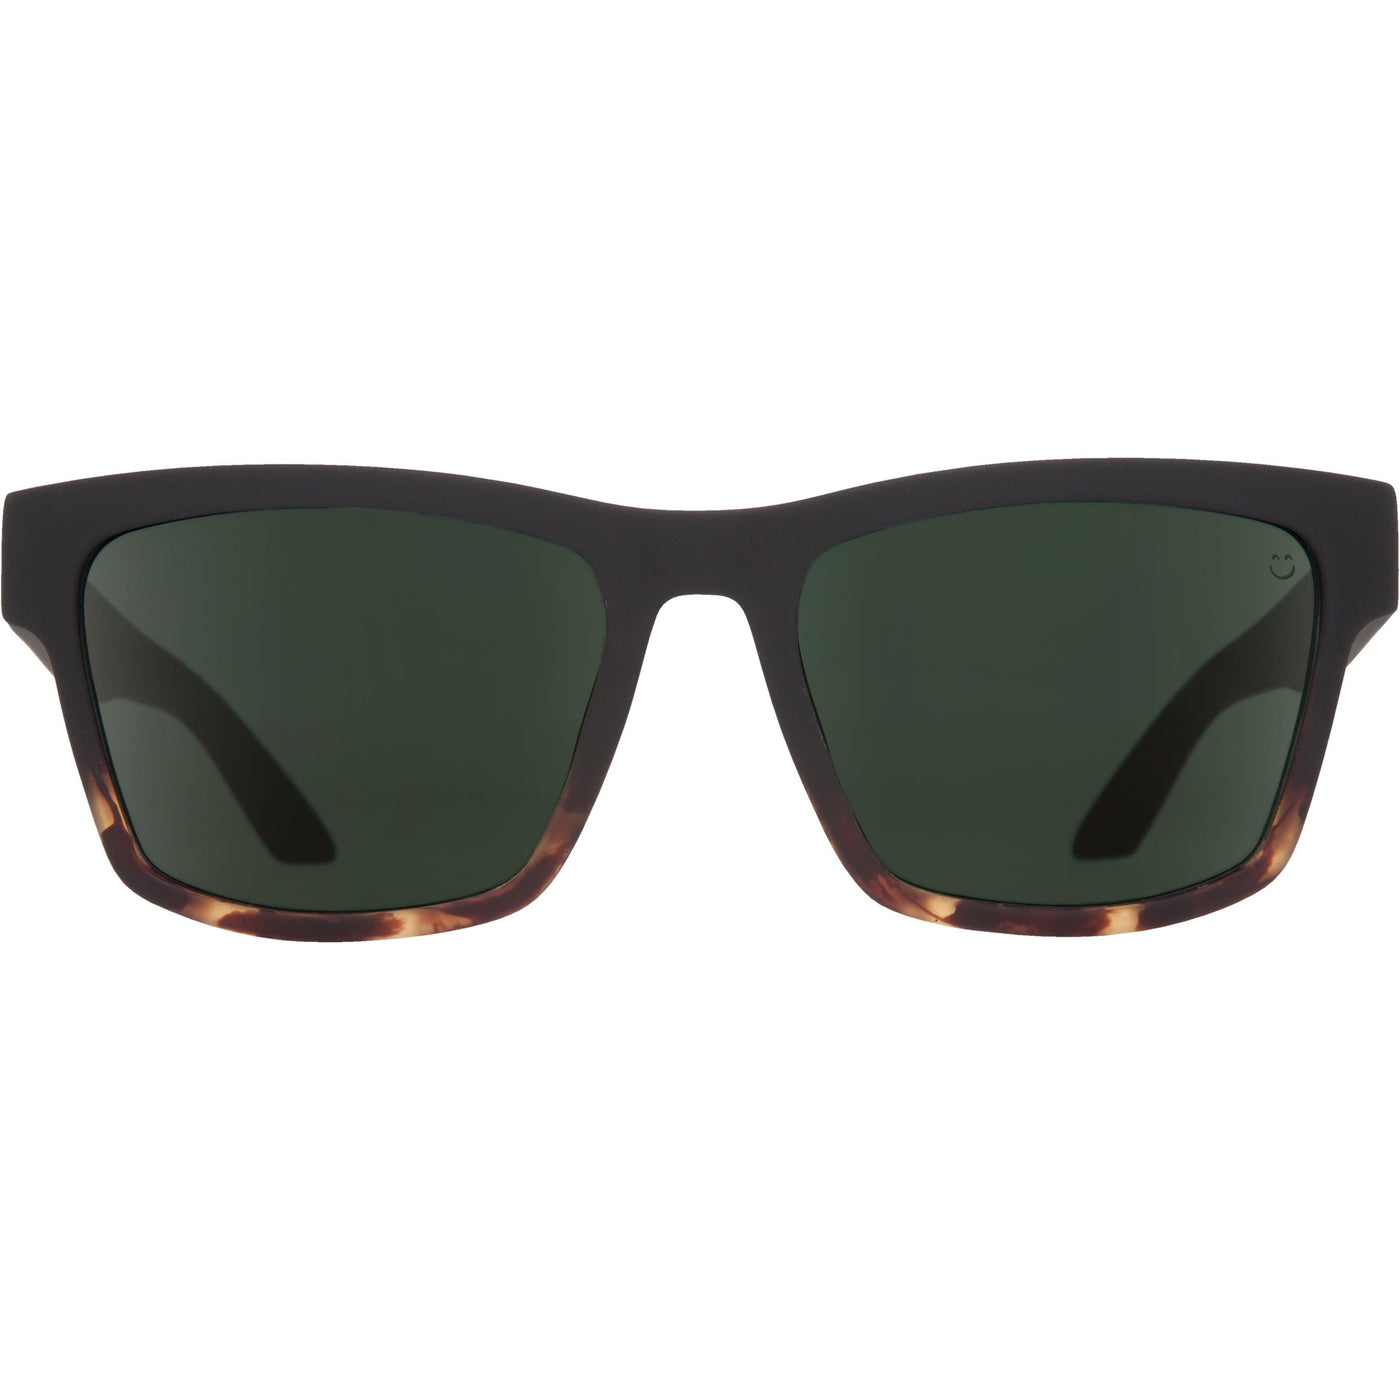 square frame sunglasses for men